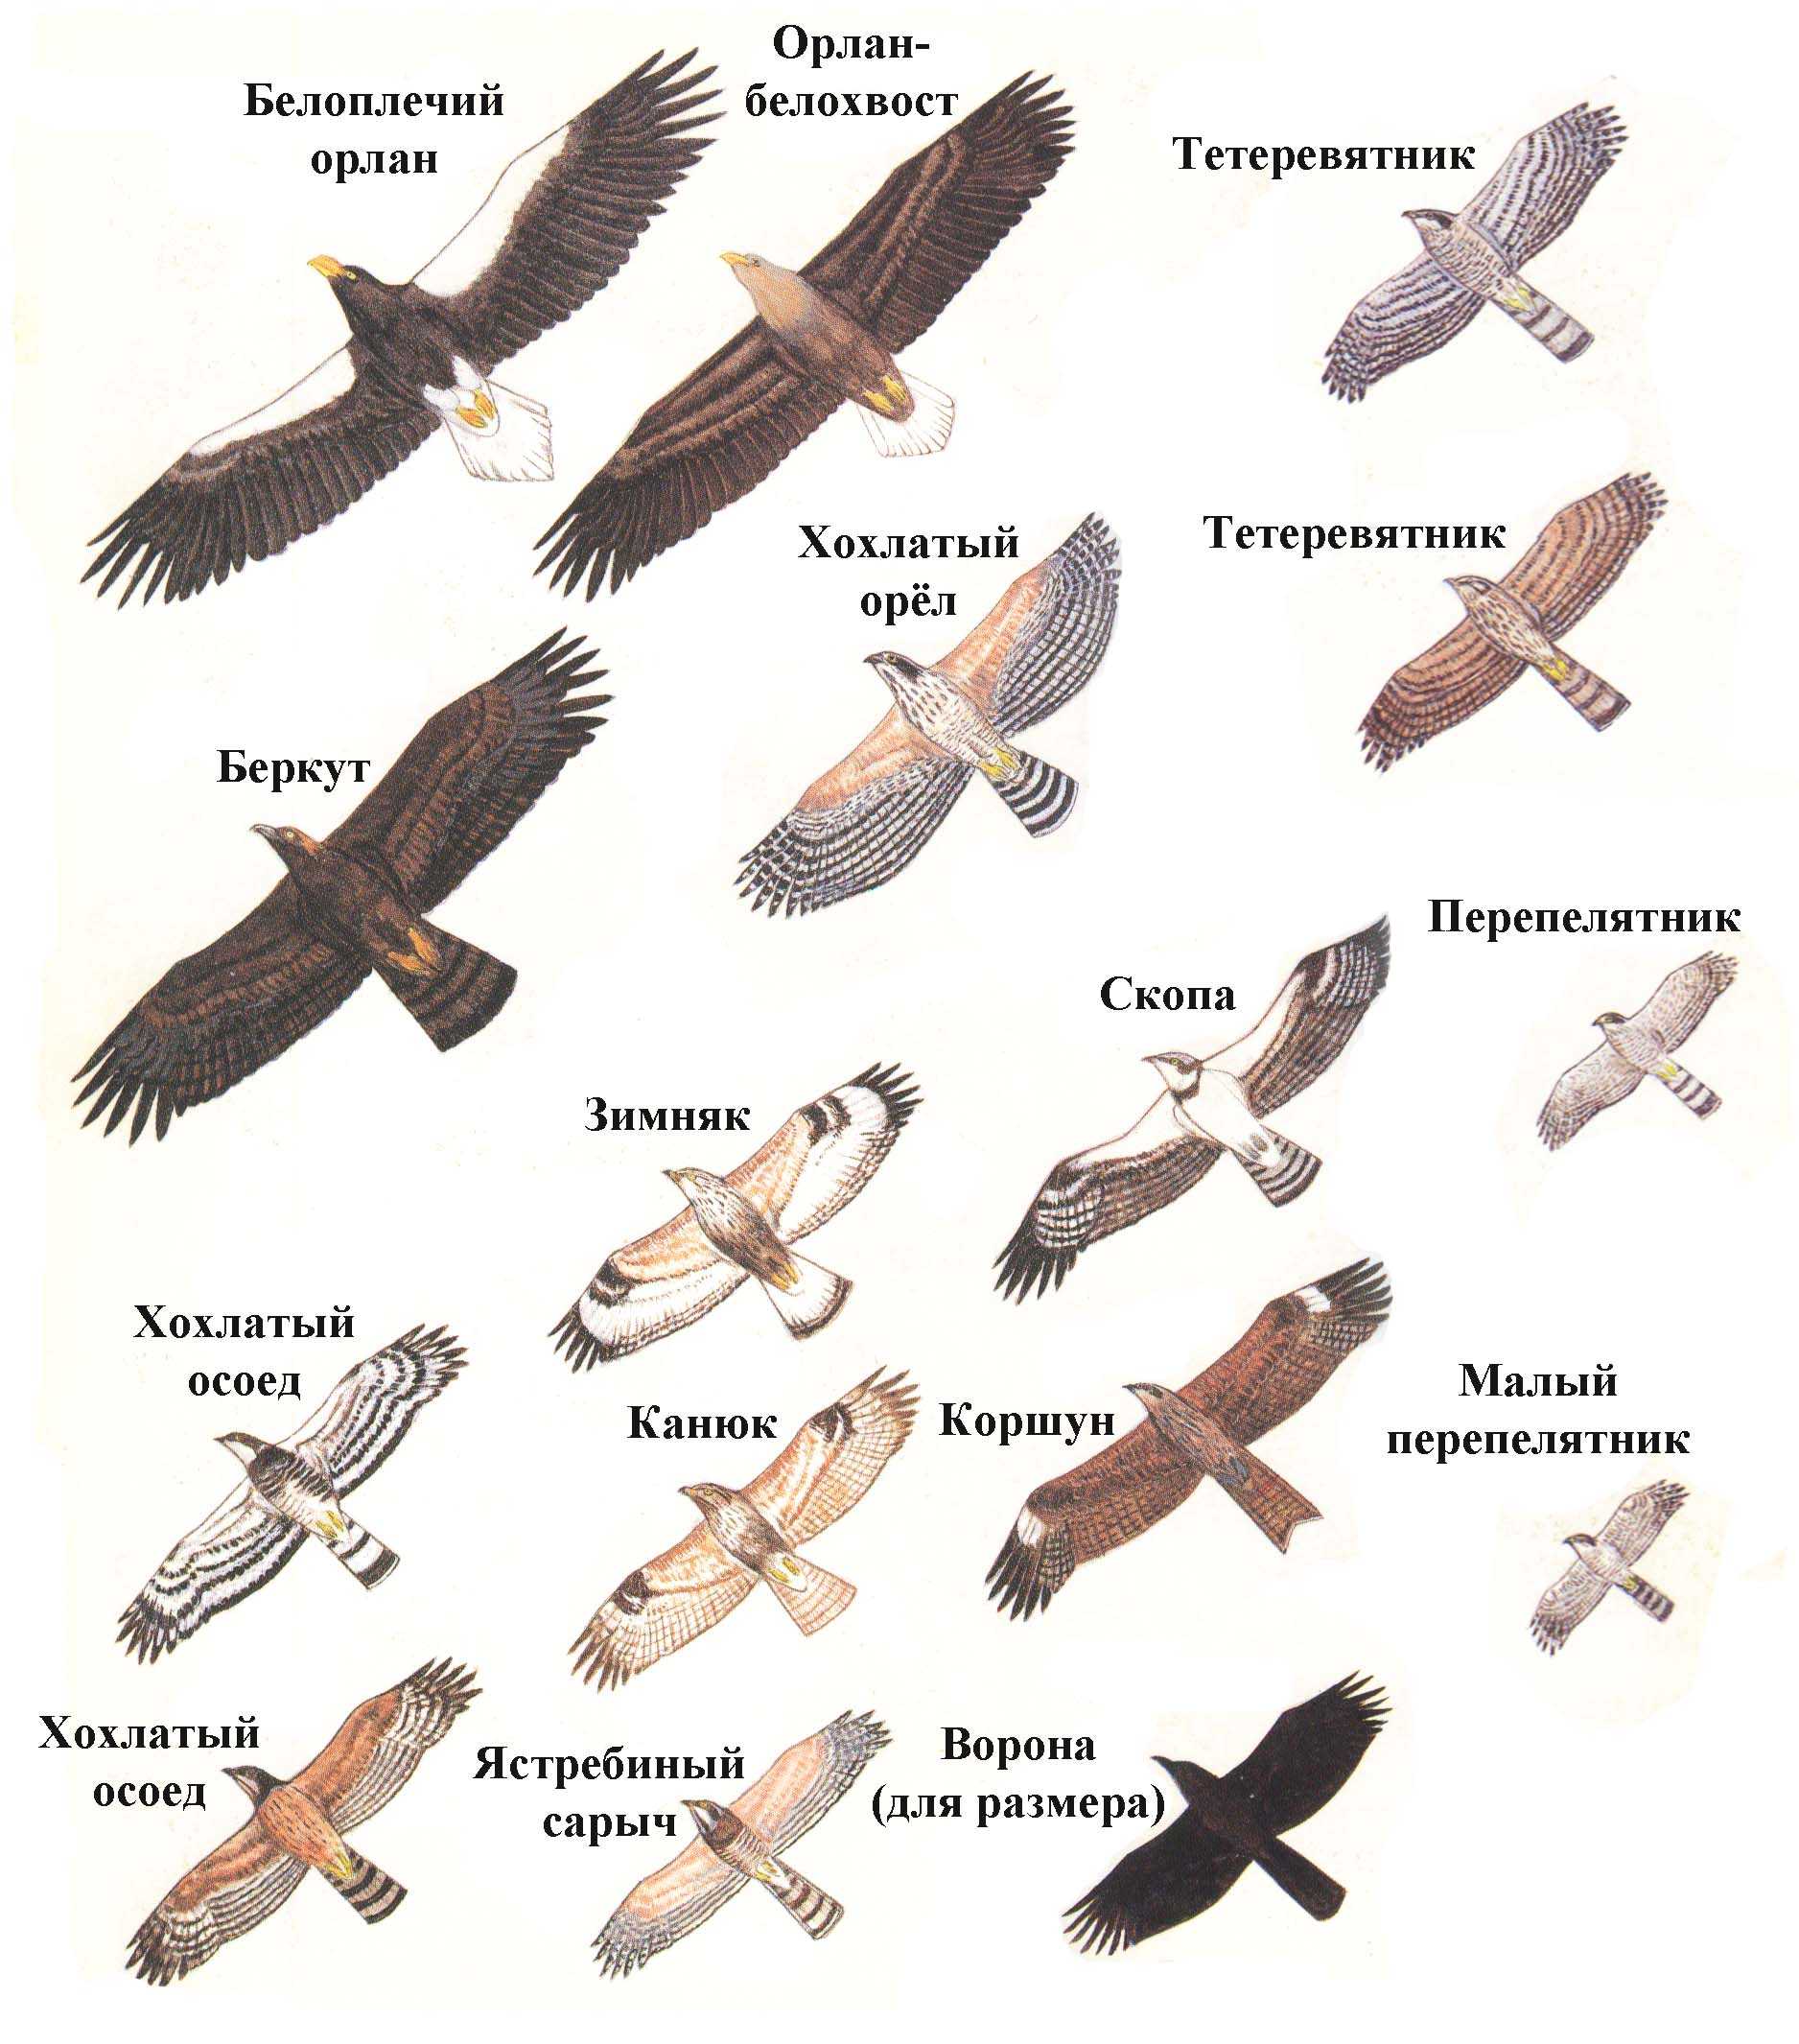 Топ 10: самые высоко летающие птицы в мире - названия, фото и описание — природа мира